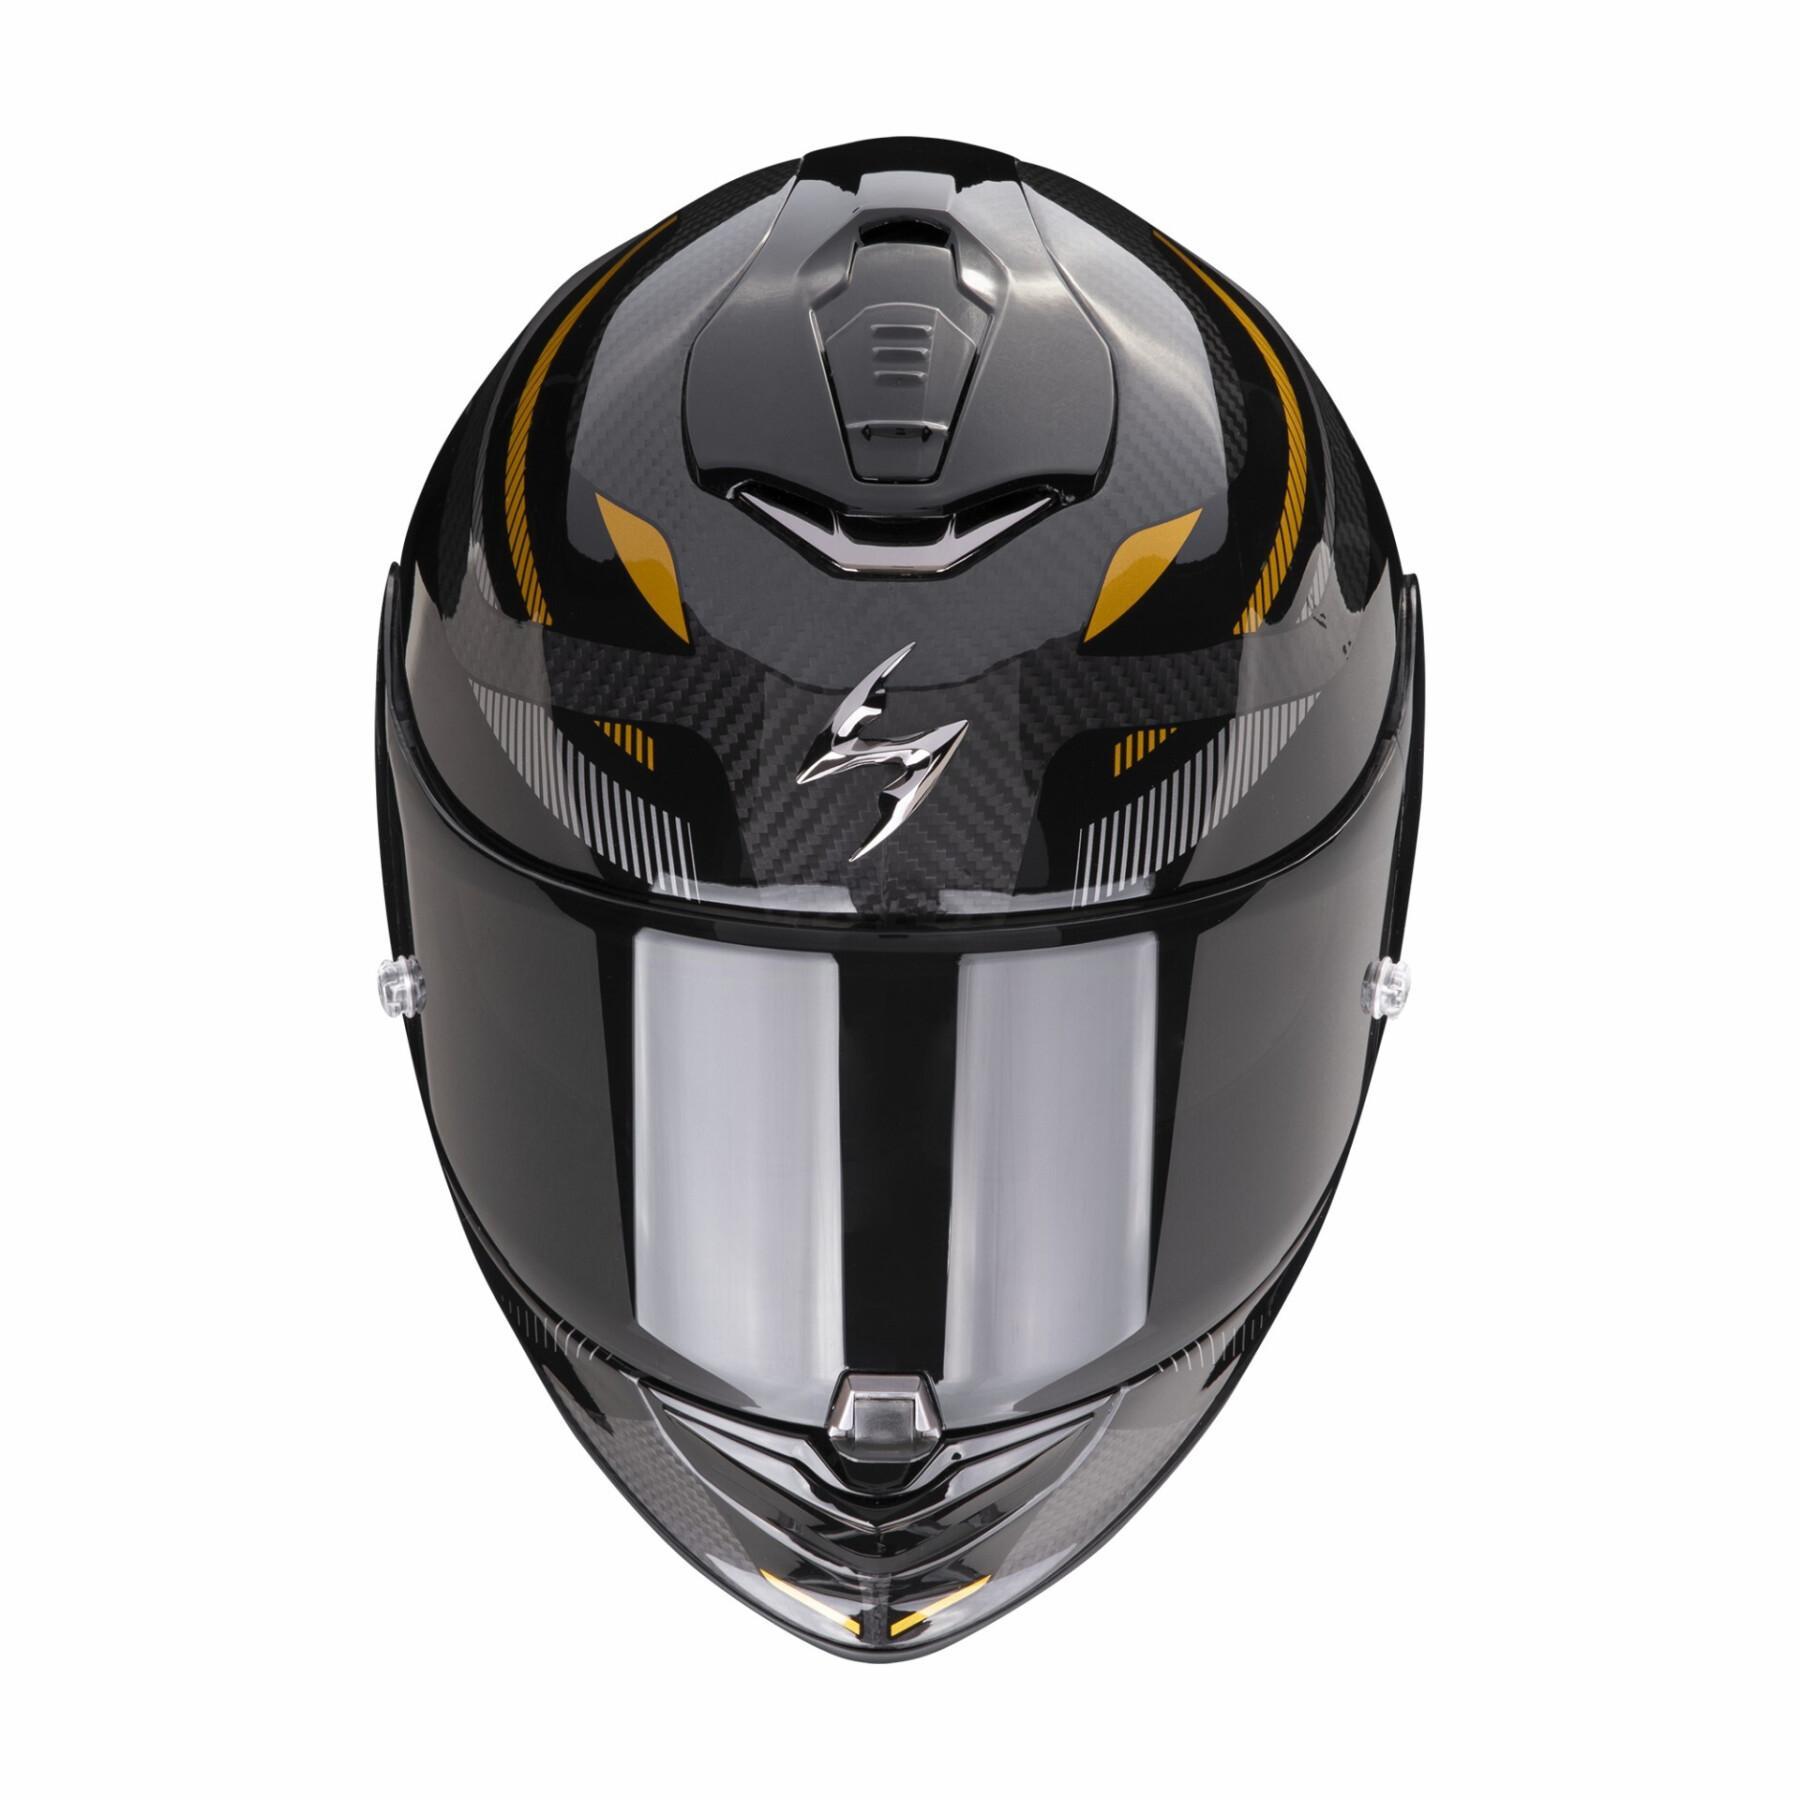 Kask motocyklowy z pełną twarzą Scorpion Exo-1400 Evo Carbon Air Kydra ECE 22-06